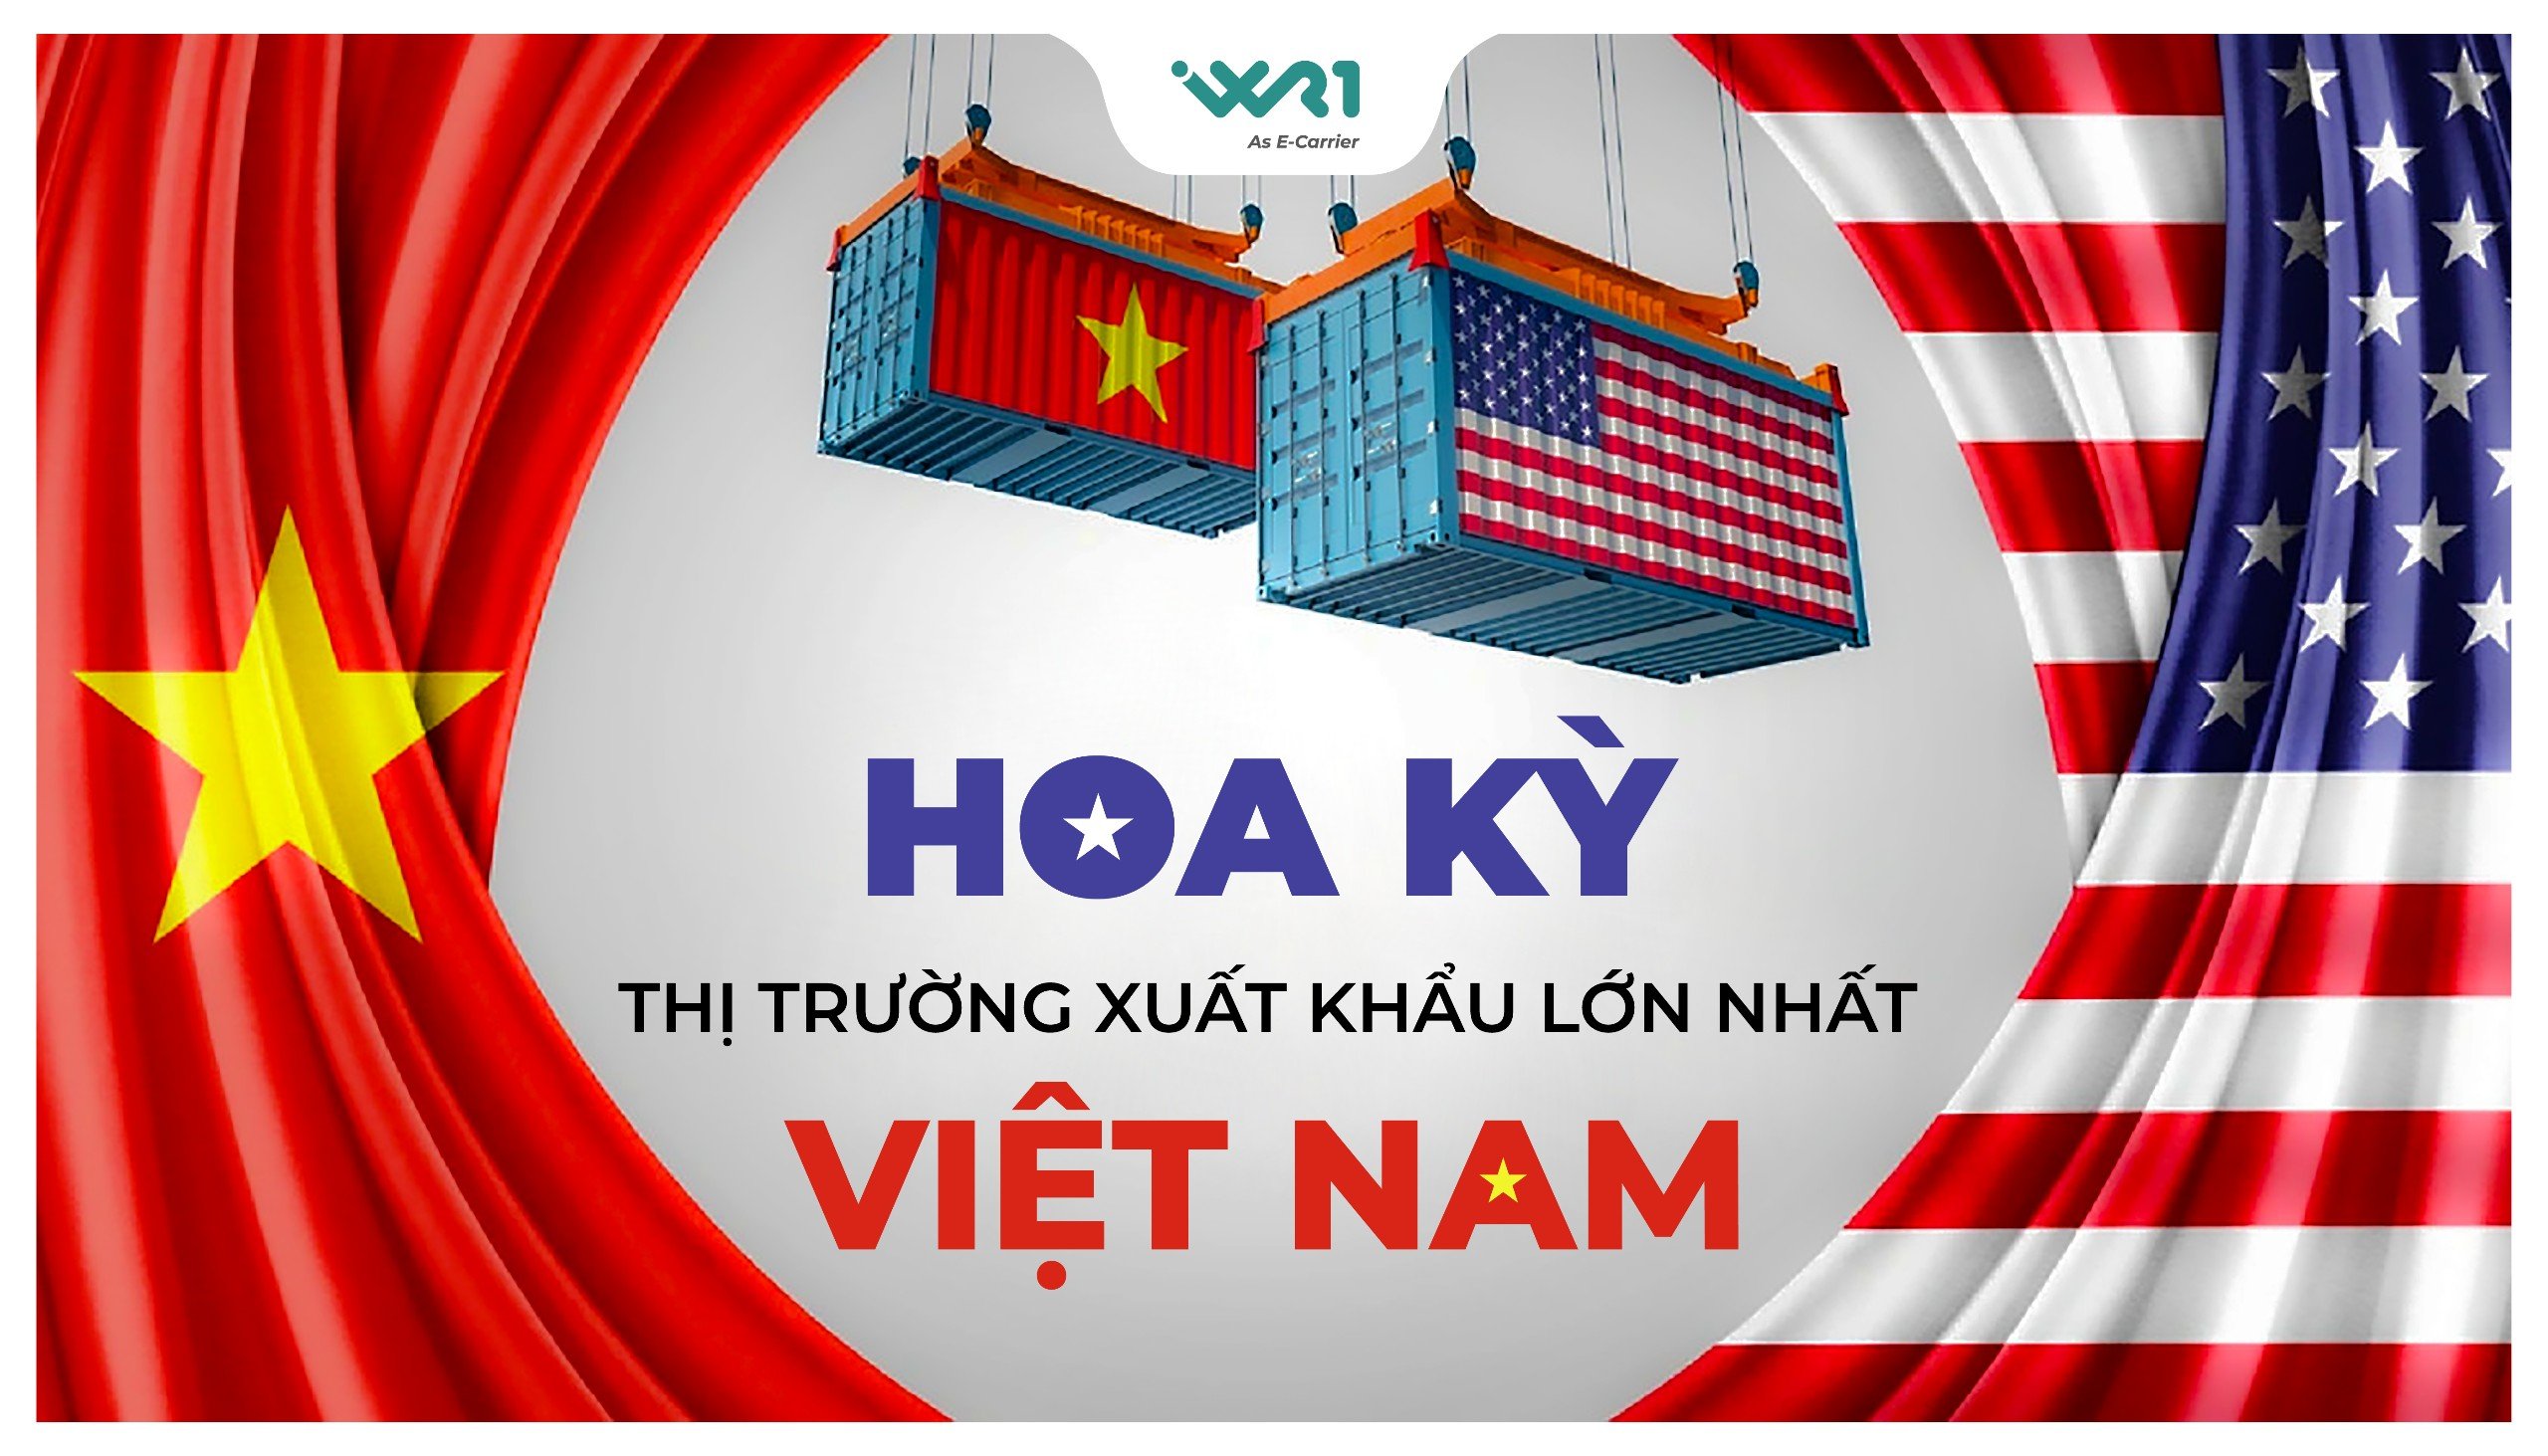 Hoa Kỳ tiếp tục là thị trường xuất khẩu lớn nhất Việt Nam